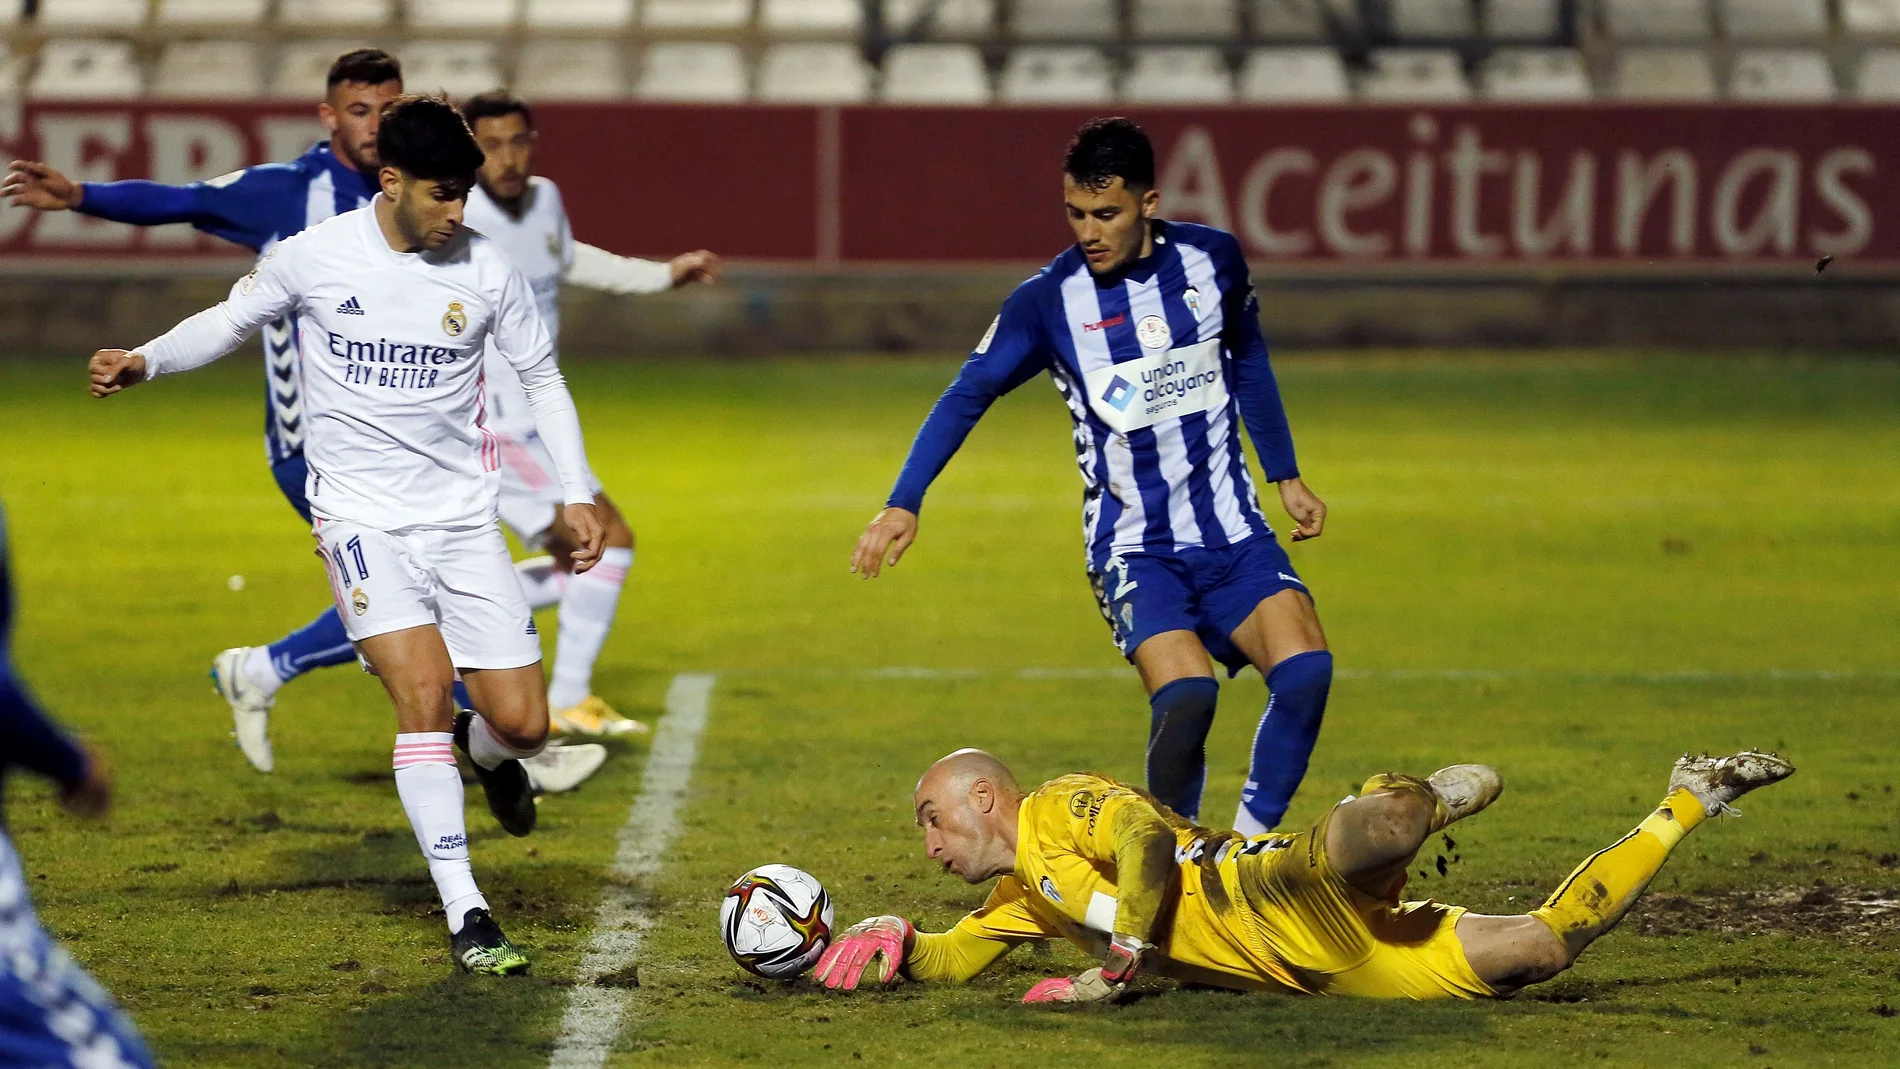 El guardameta del Alcoyano, José Juan (d), detiene un balón ante el centrocampista del Real Madrid, Marco Asensio durante el Alcoyano-Real Madrid